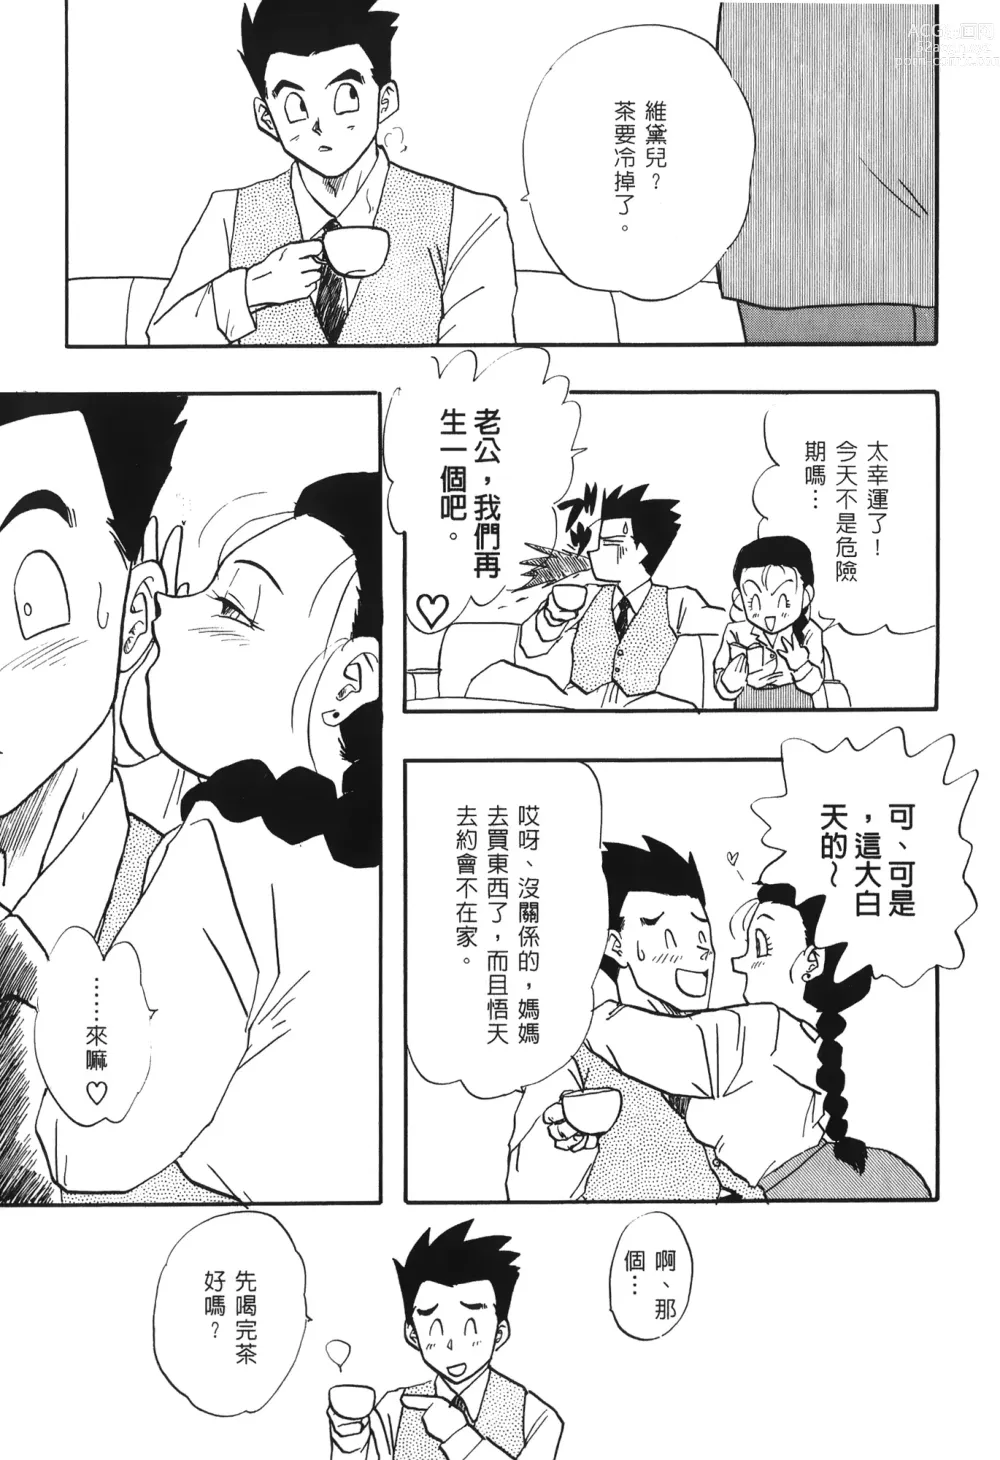 Page 147 of doujinshi ドラゴンパール 03